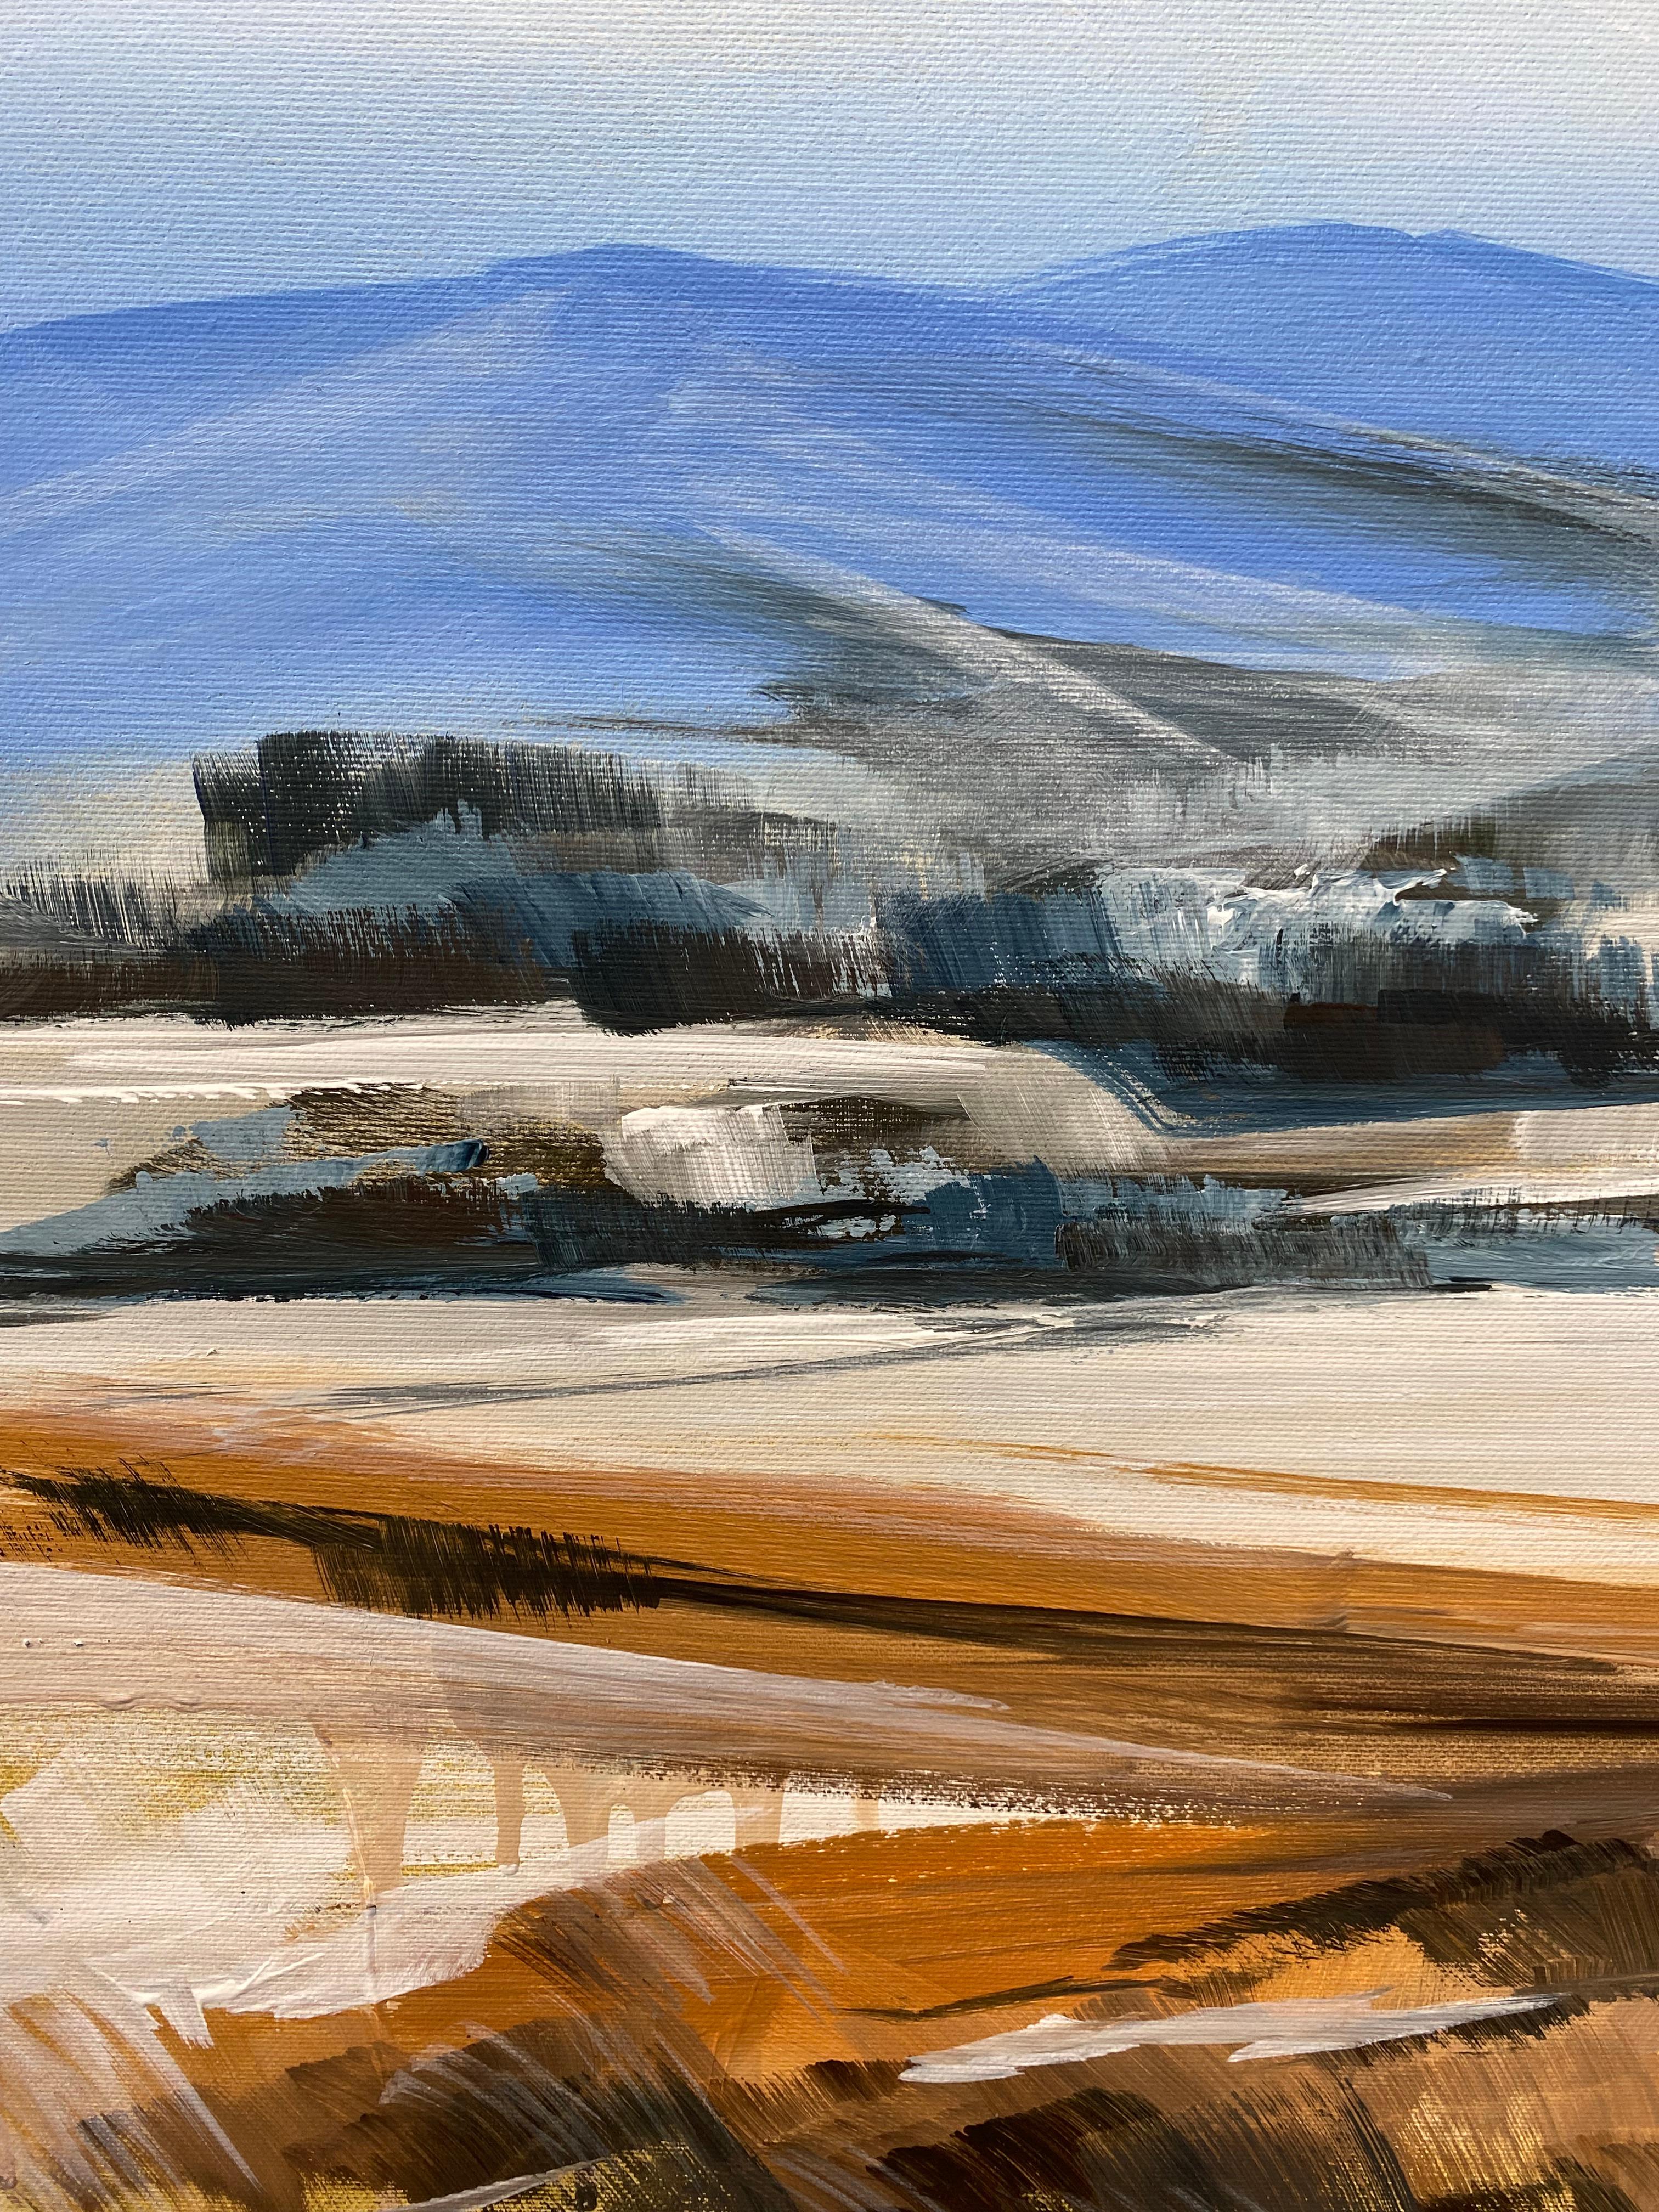 Dieses Gemälde fängt einen Wintertag ein, der auf der Leinwand eingefroren ist. Die unberührten weißen Hügel gehen in sanfte blaue Schatten über und vermitteln ein Gefühl von Kälte und Ruhe. Der hohe Himmel dehnt sich über der Erde aus, gefüllt mit